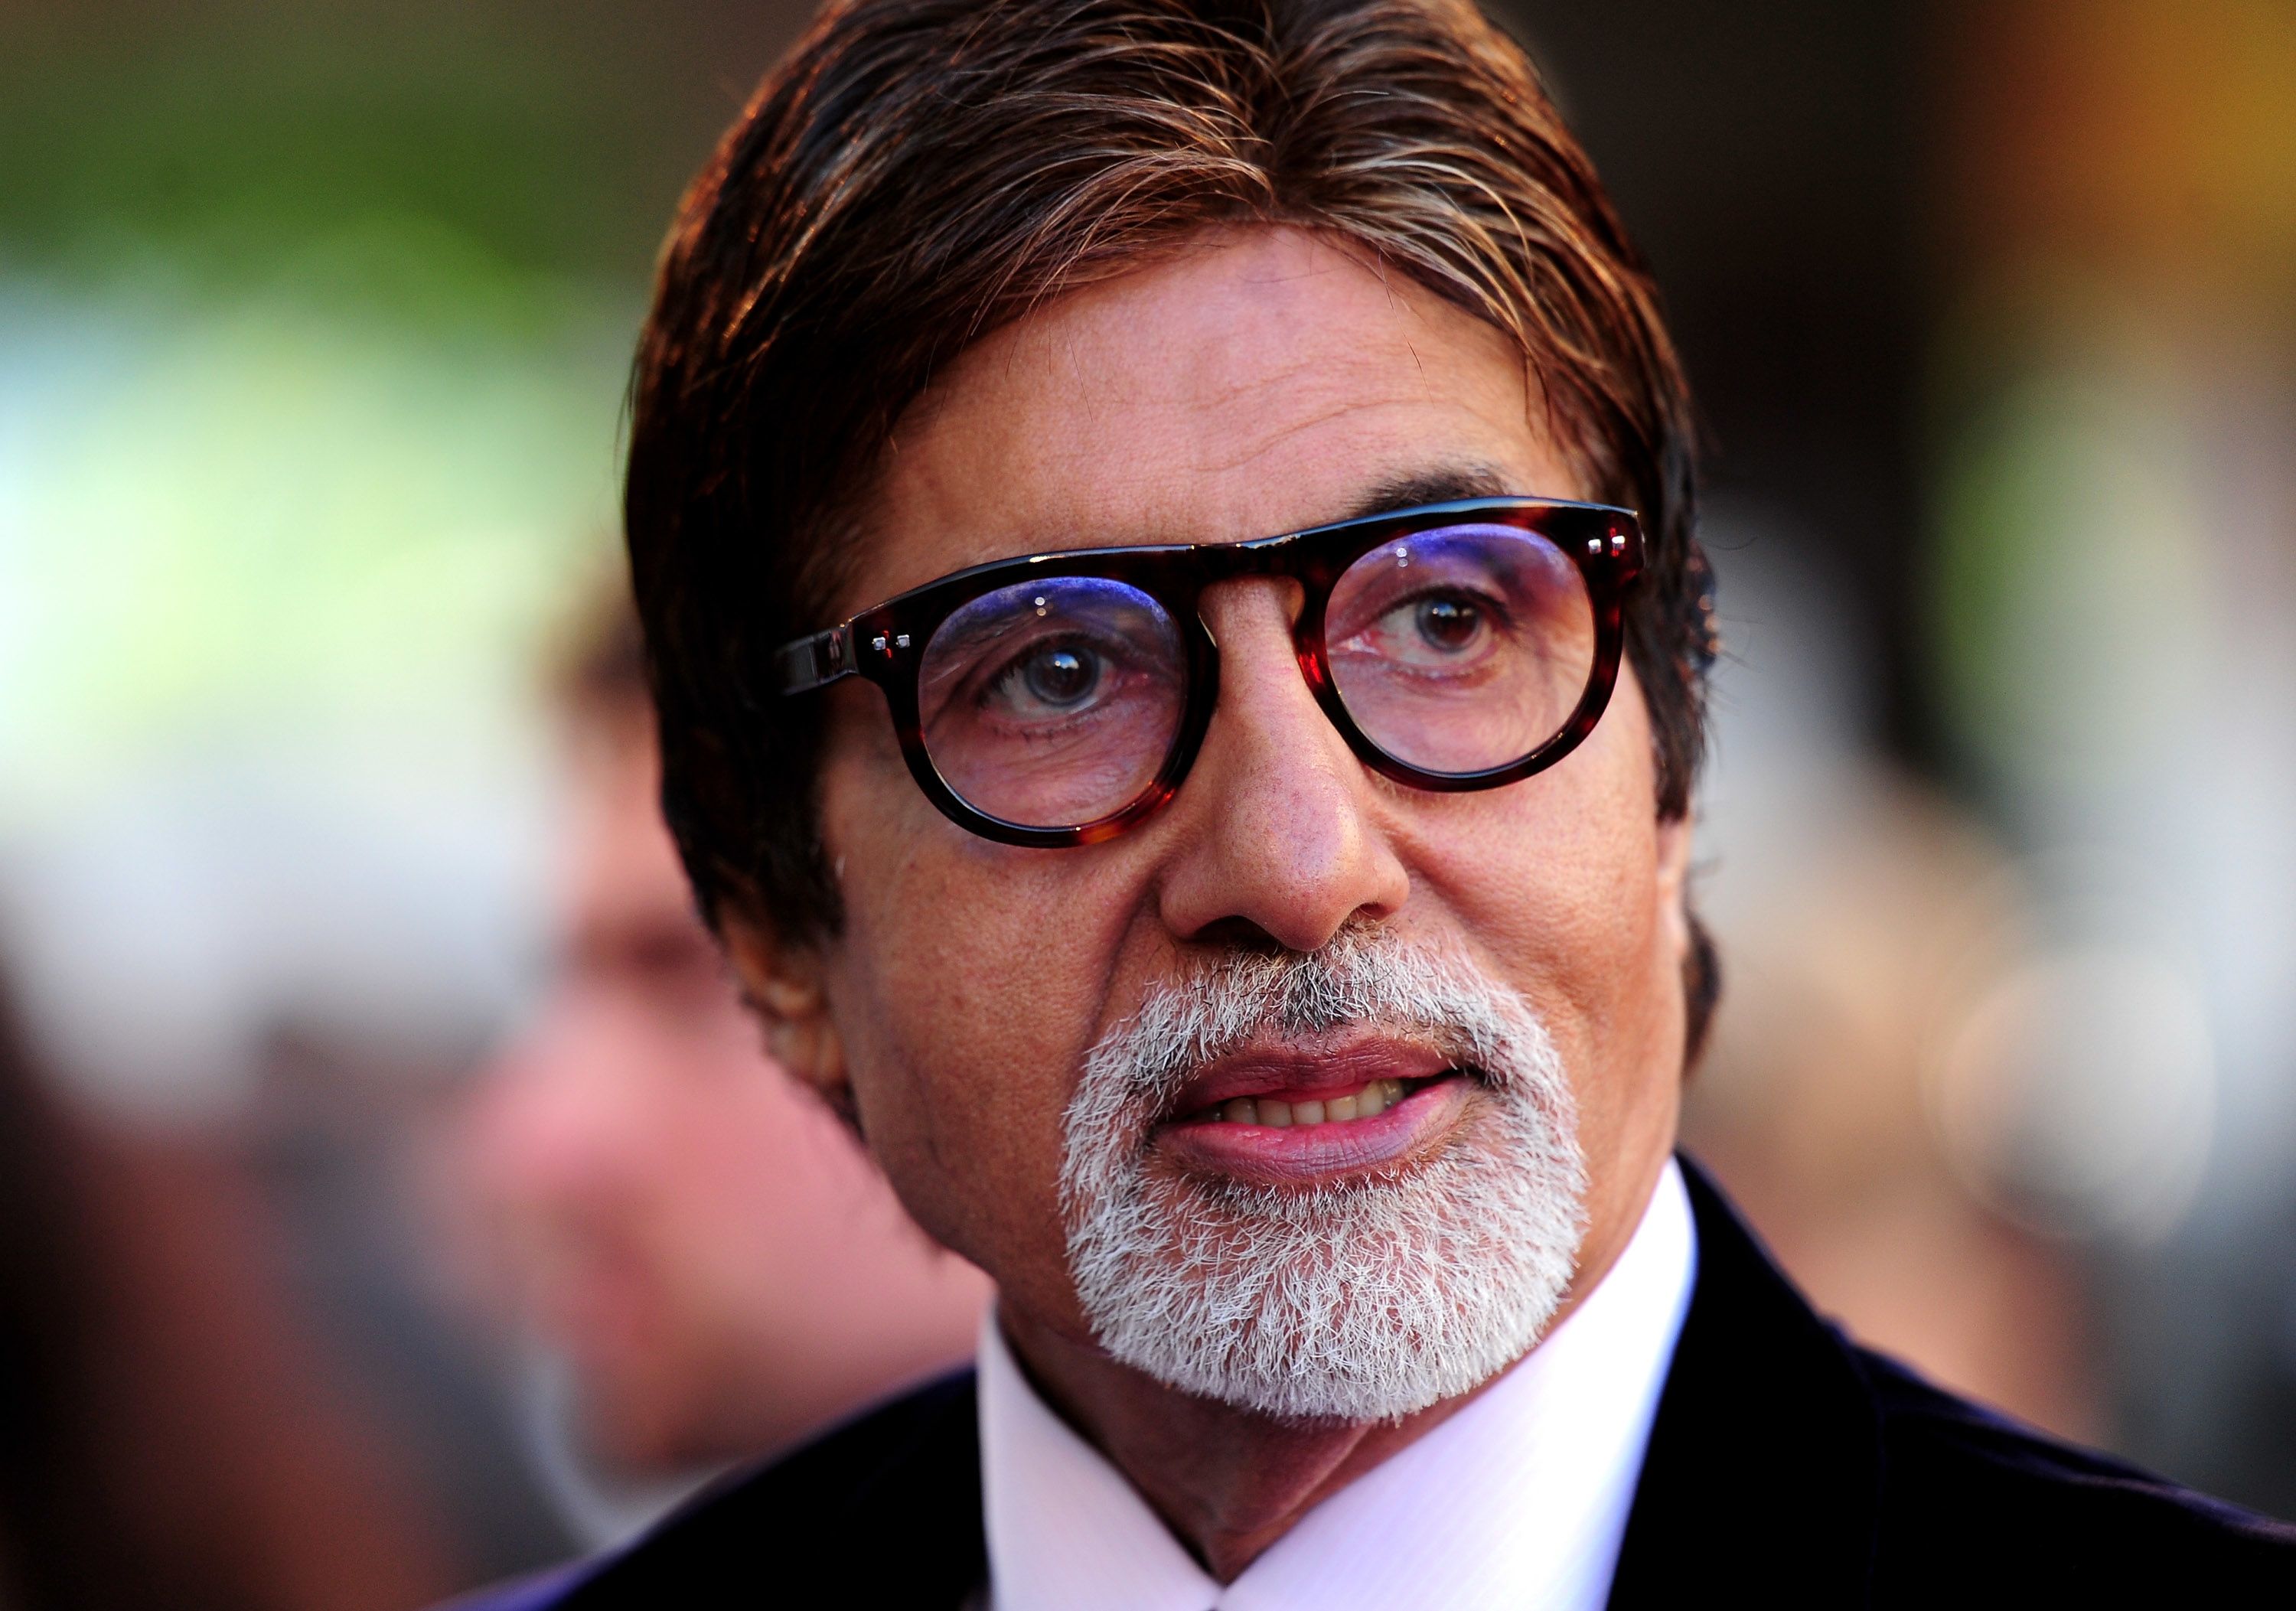 Amitabh Bachchan, Bollywood star, clears debts of 1,398 Indian farmers | CNN